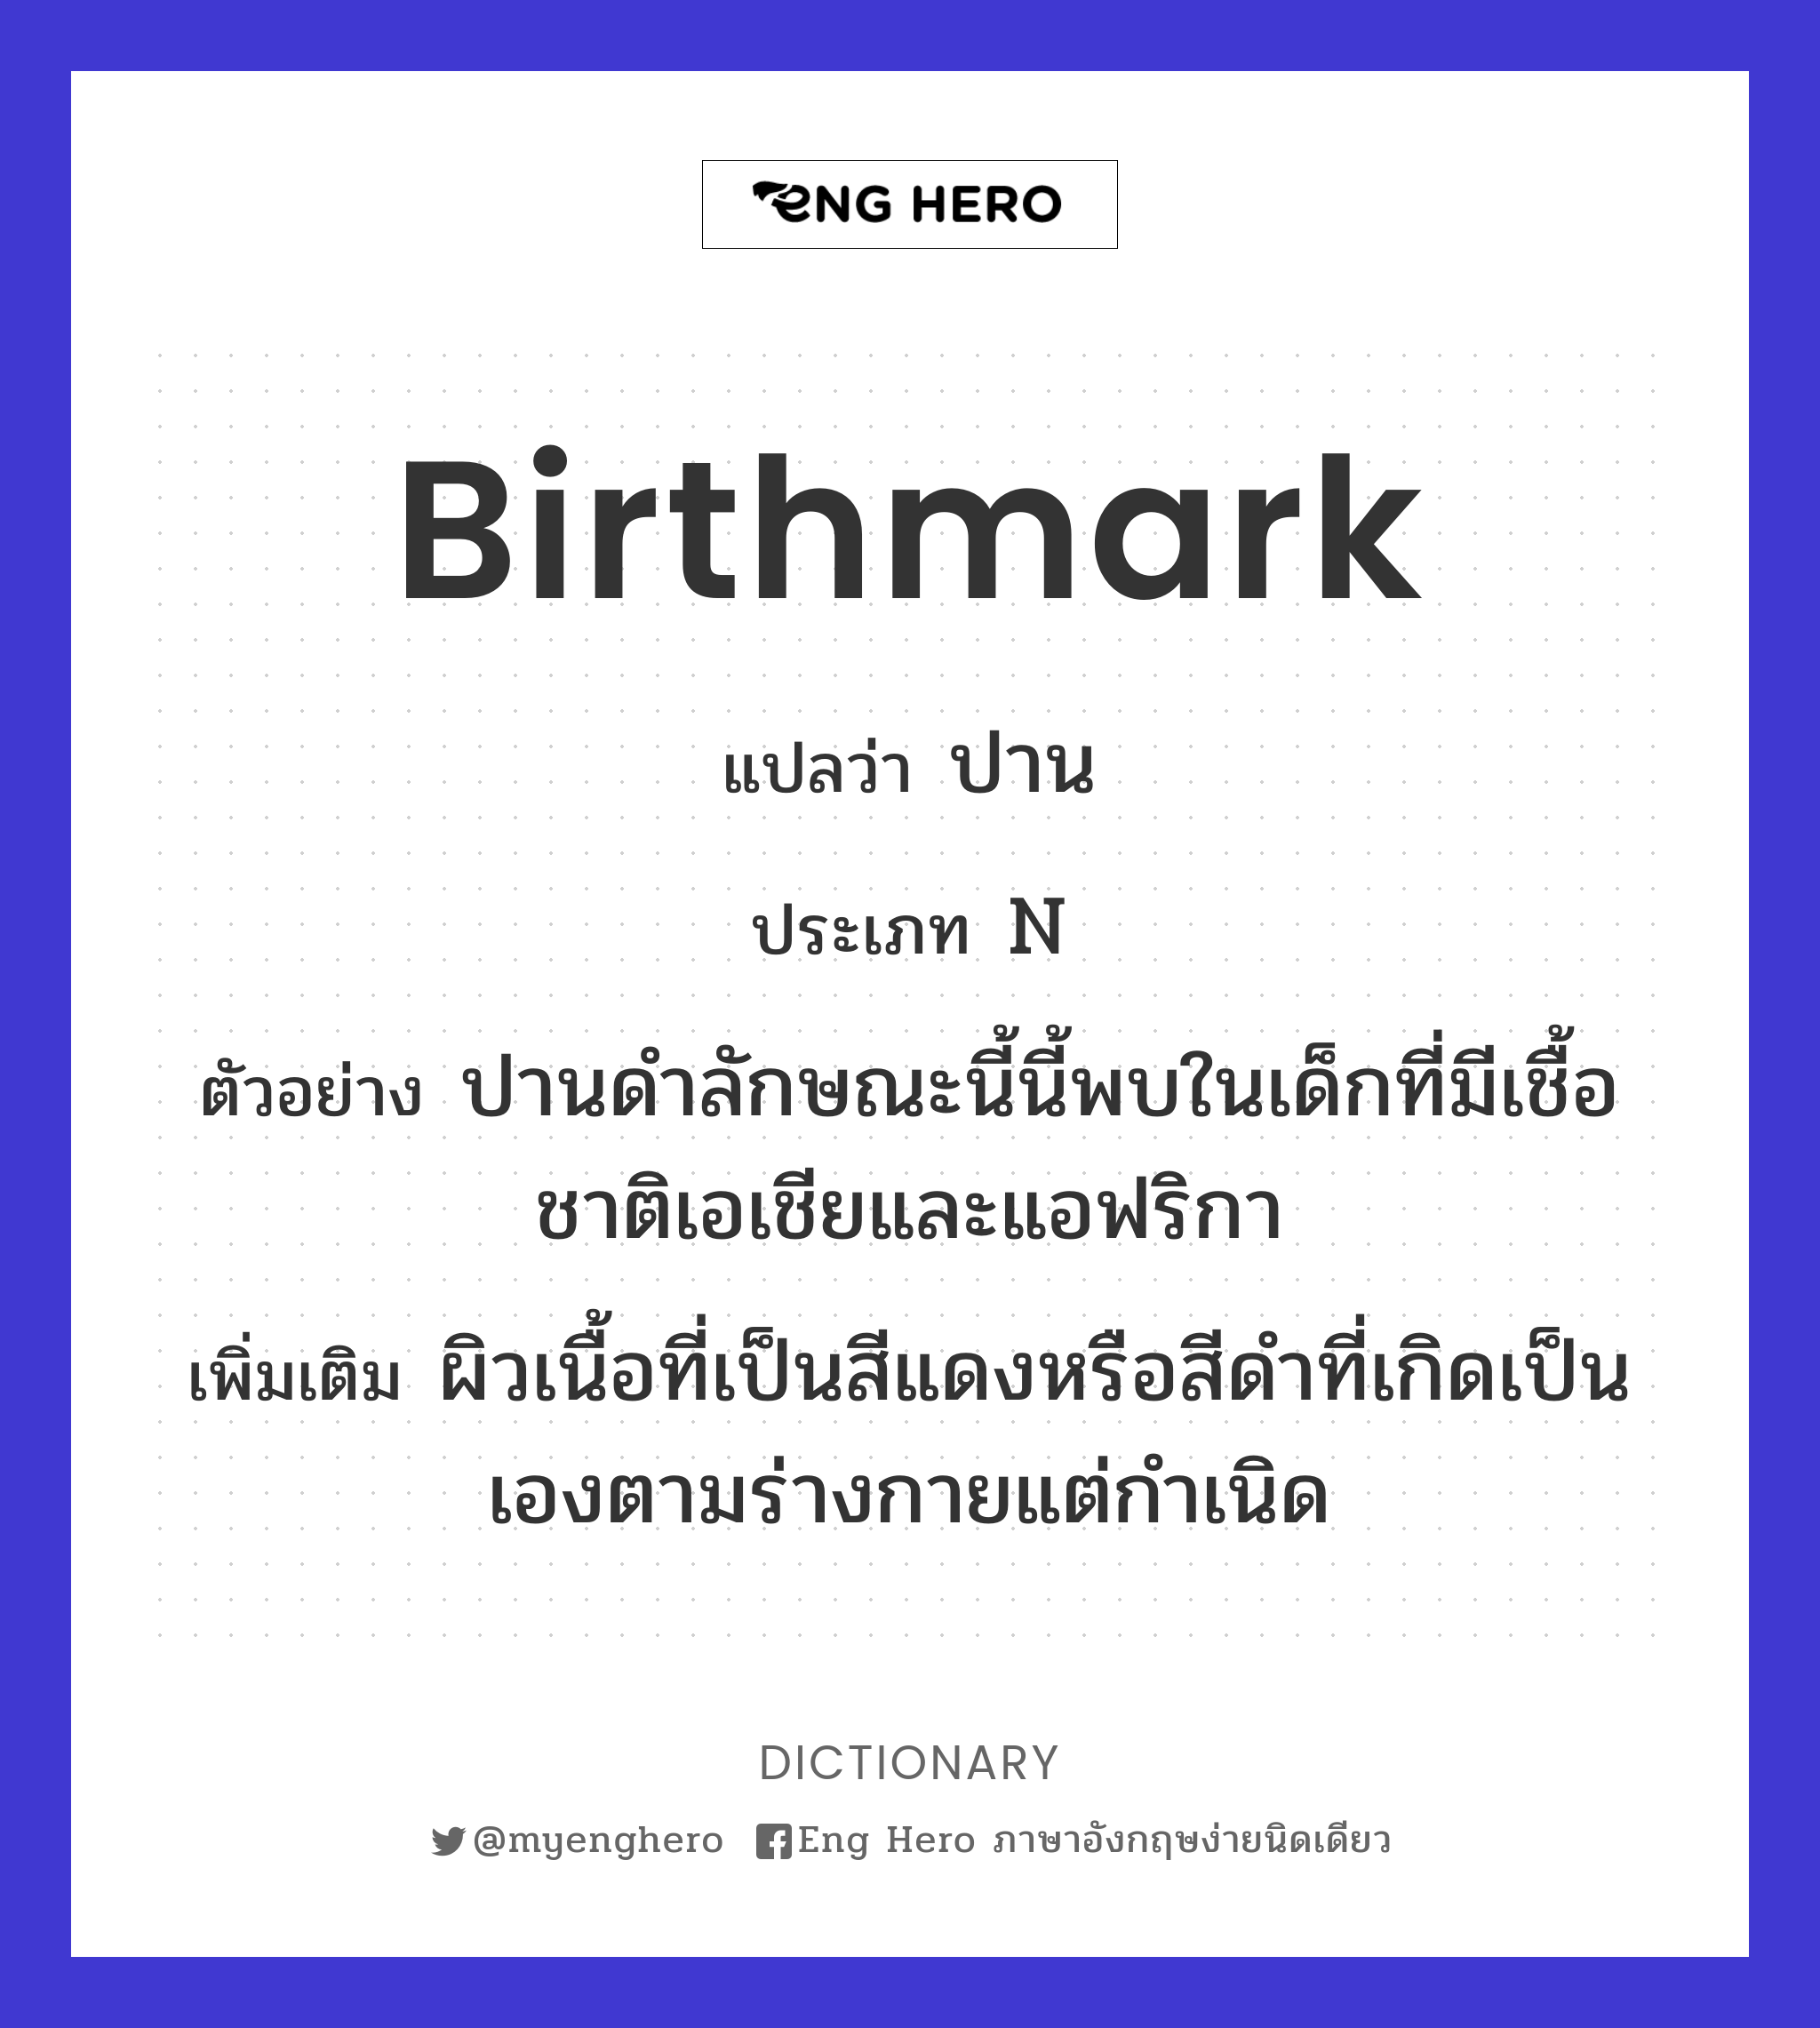 birthmark